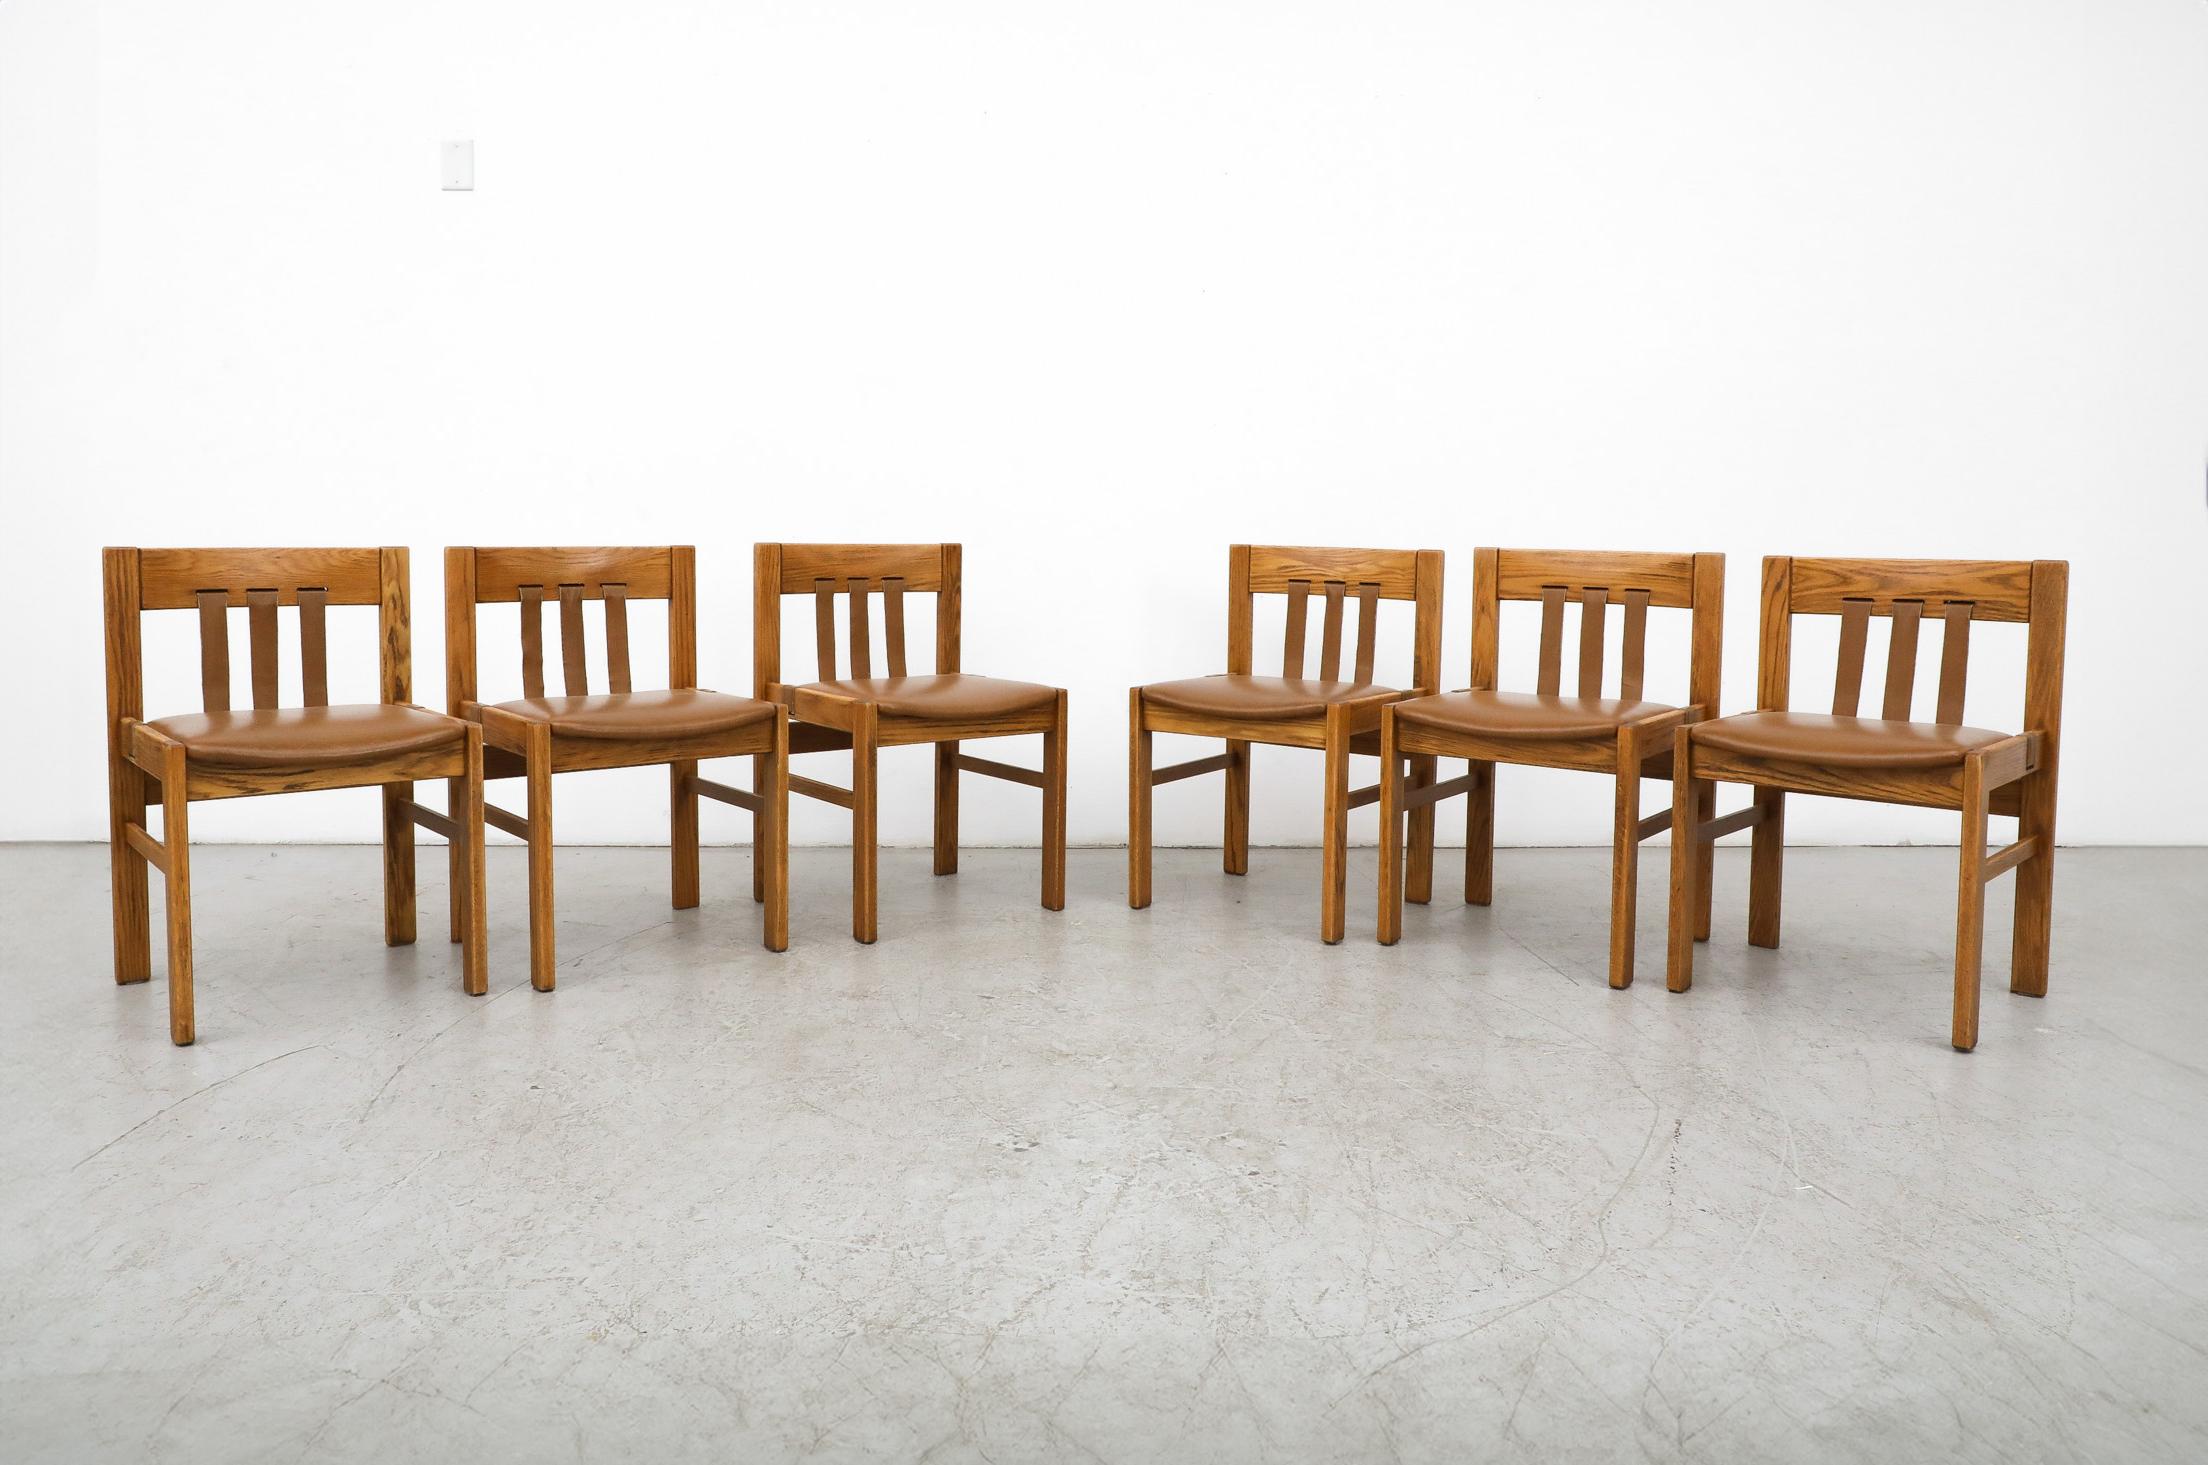 Magnifique ensemble de 6 chaises de salle à manger du milieu du siècle par Martin Visser pour 't Spectrum.  Le design moderniste très attrayant et le cadre en chêne joliment profilé, doté d'un cerclage en cuir, font de cet ensemble une véritable